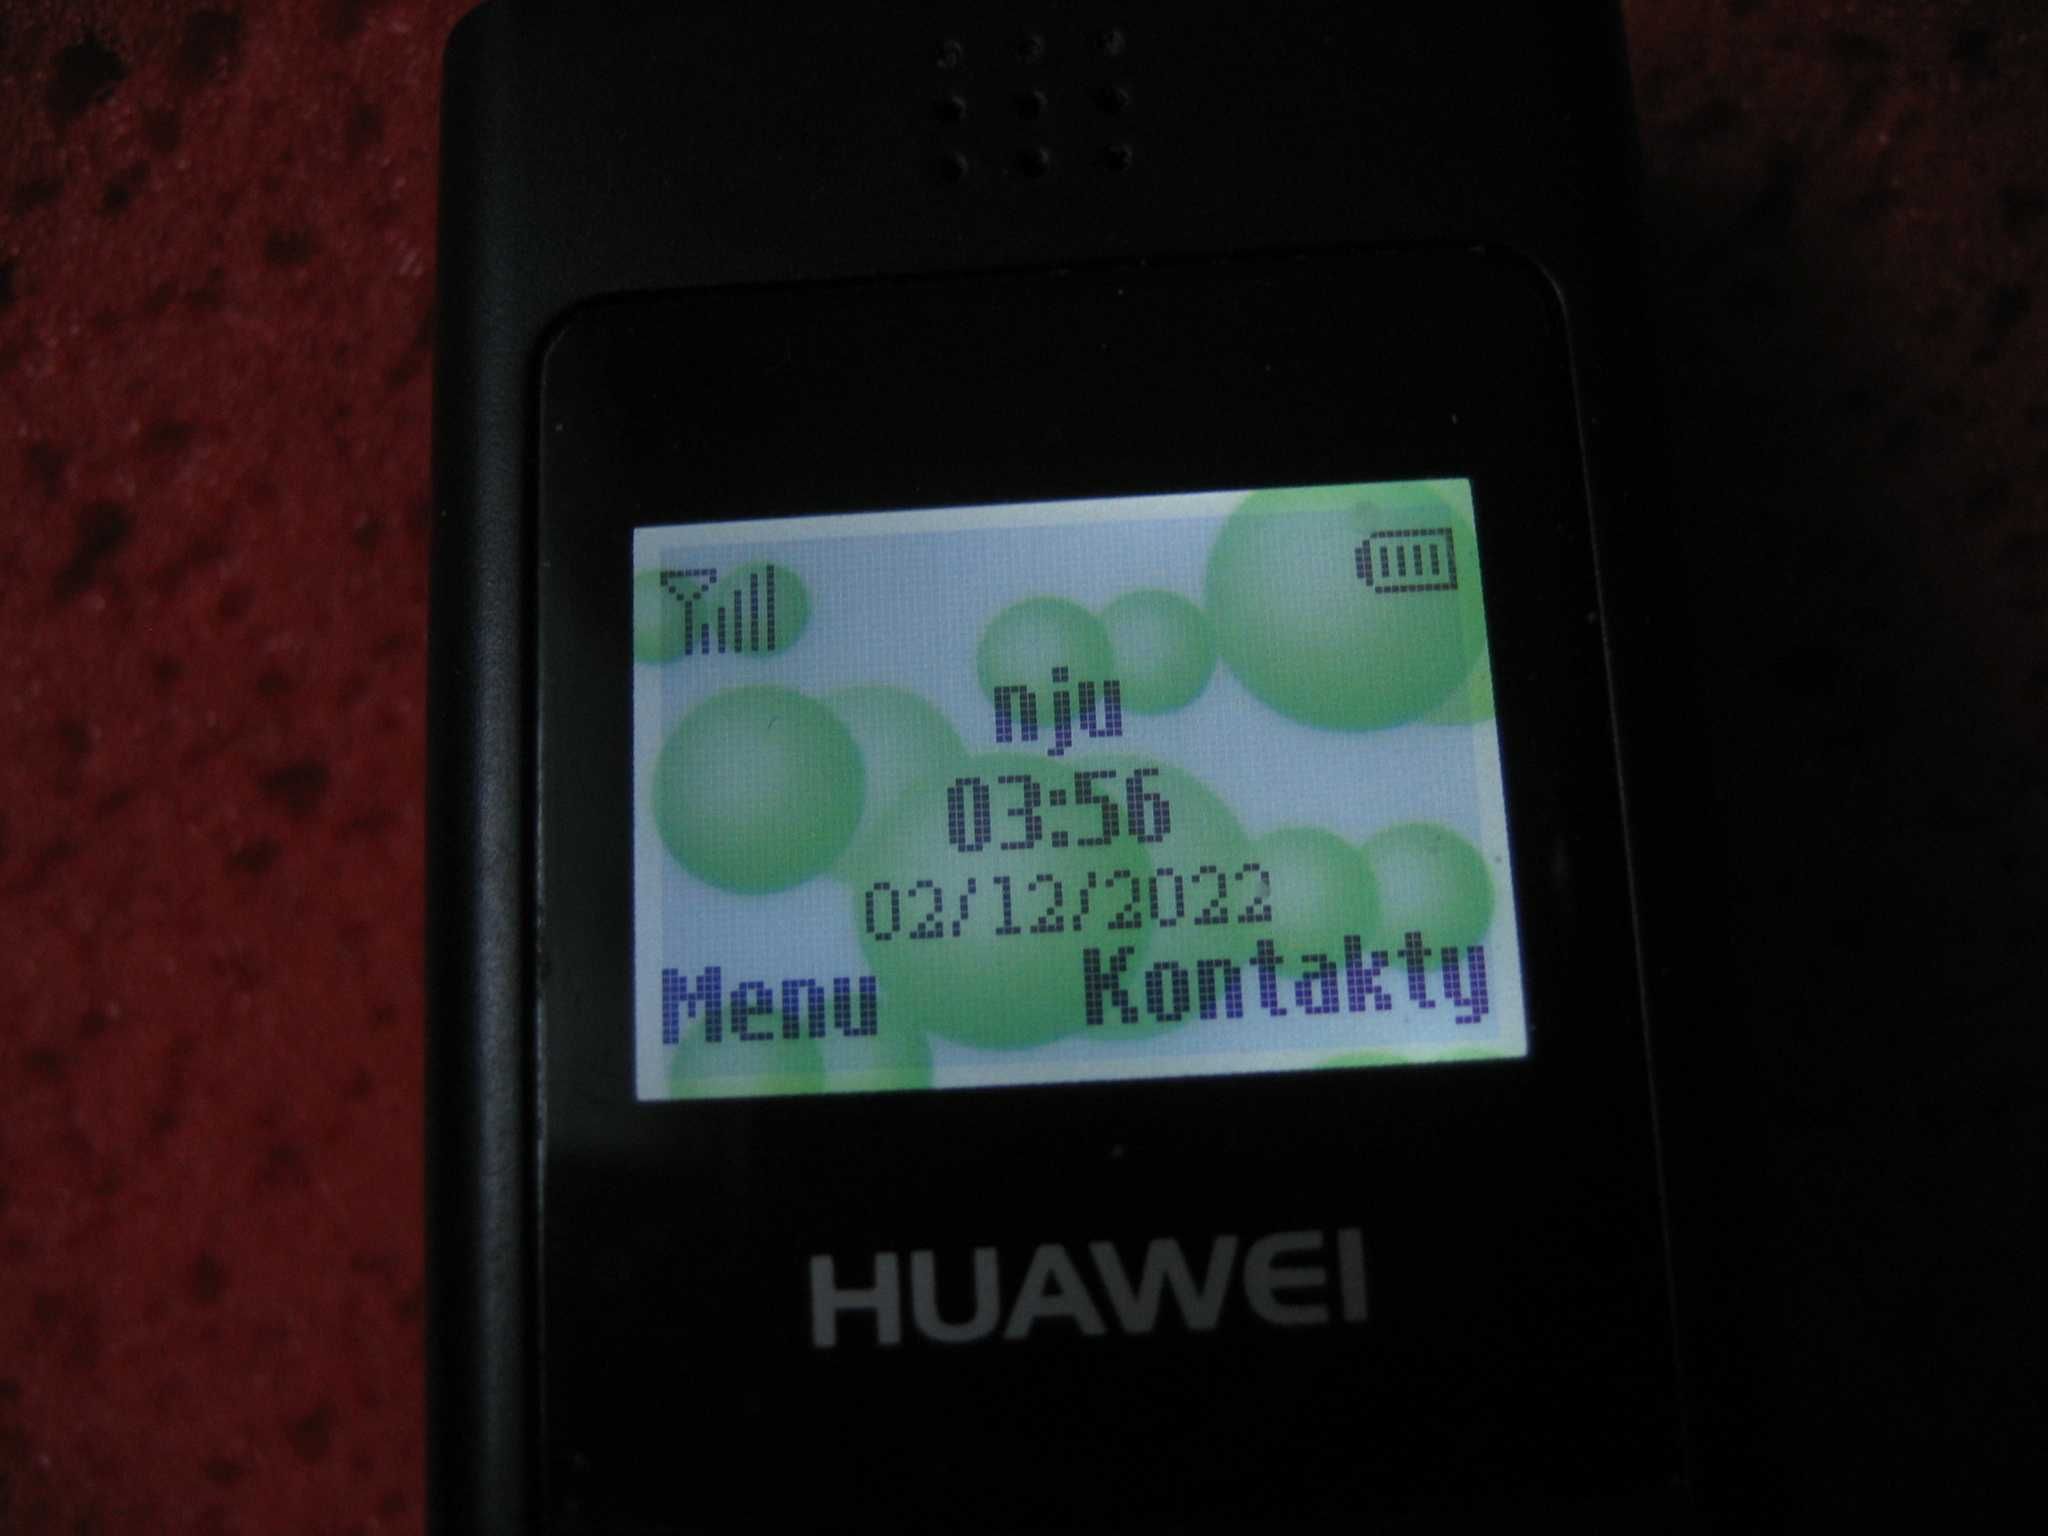 Telefon komórkowy HUAWEI F360 + ładowarka stacjonarna - duże przyciski